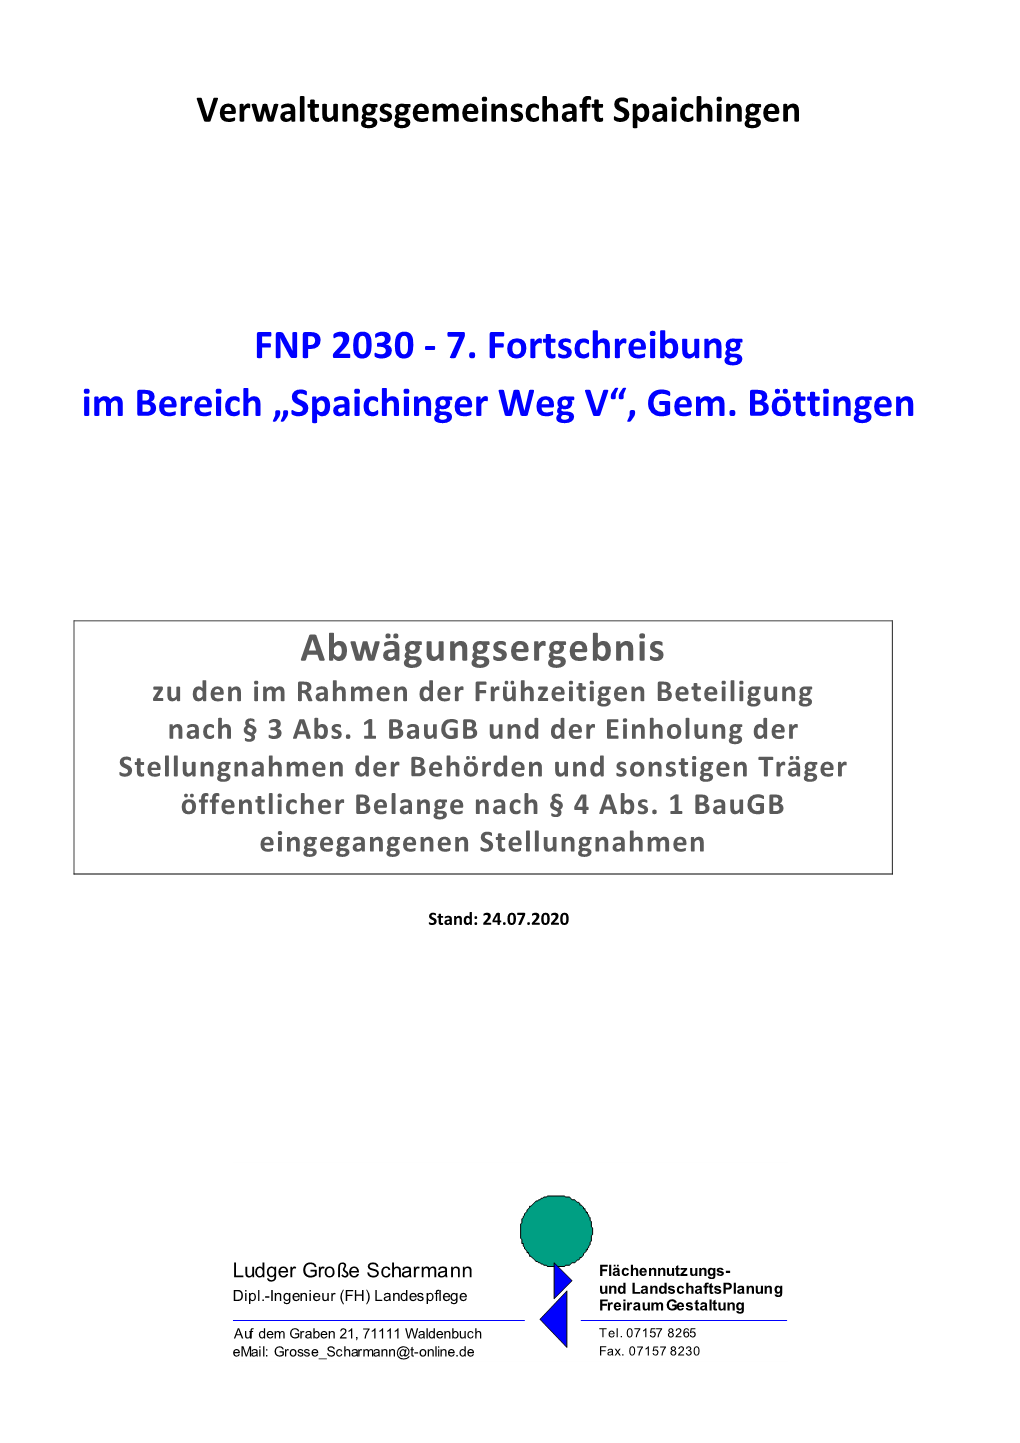 FNP 2030 ‐ 7. Fortschreibung Im Bereich „Spaichinger Weg V“, Gem